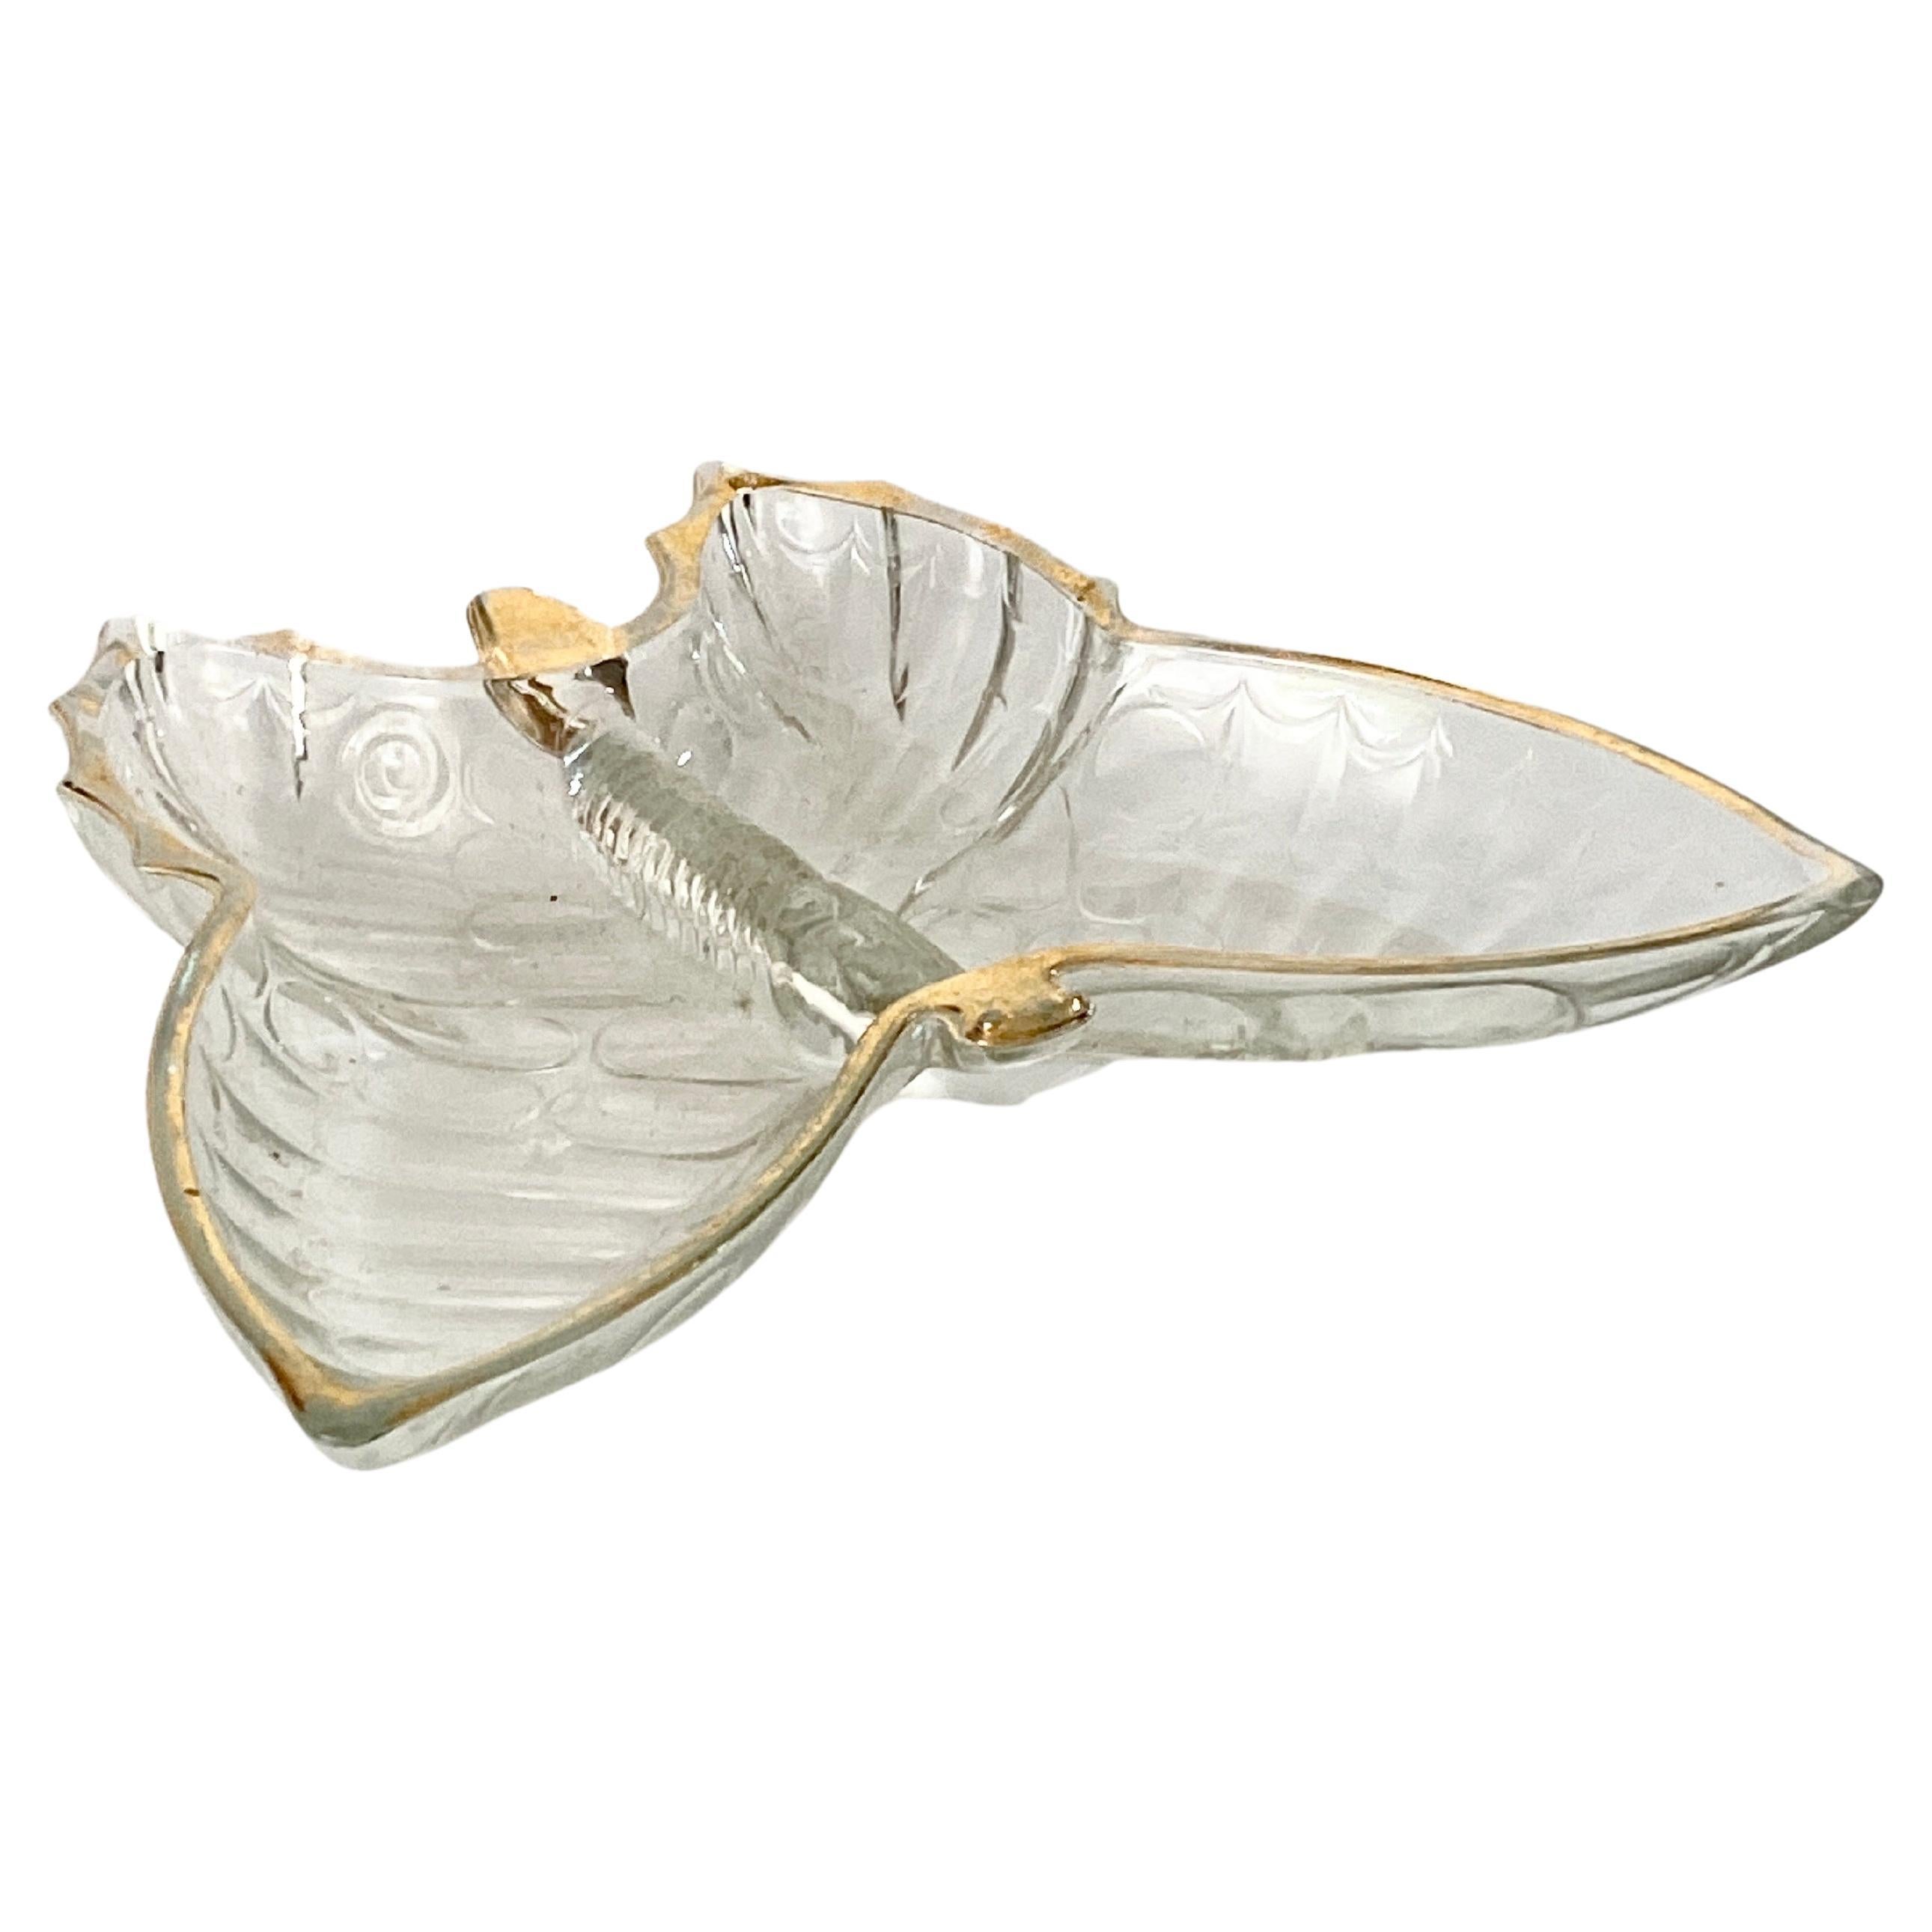 Aschenbecher oder Ablageschale aus Glasglas, Schmetterlingsform, mit vergoldetem Dekormuster